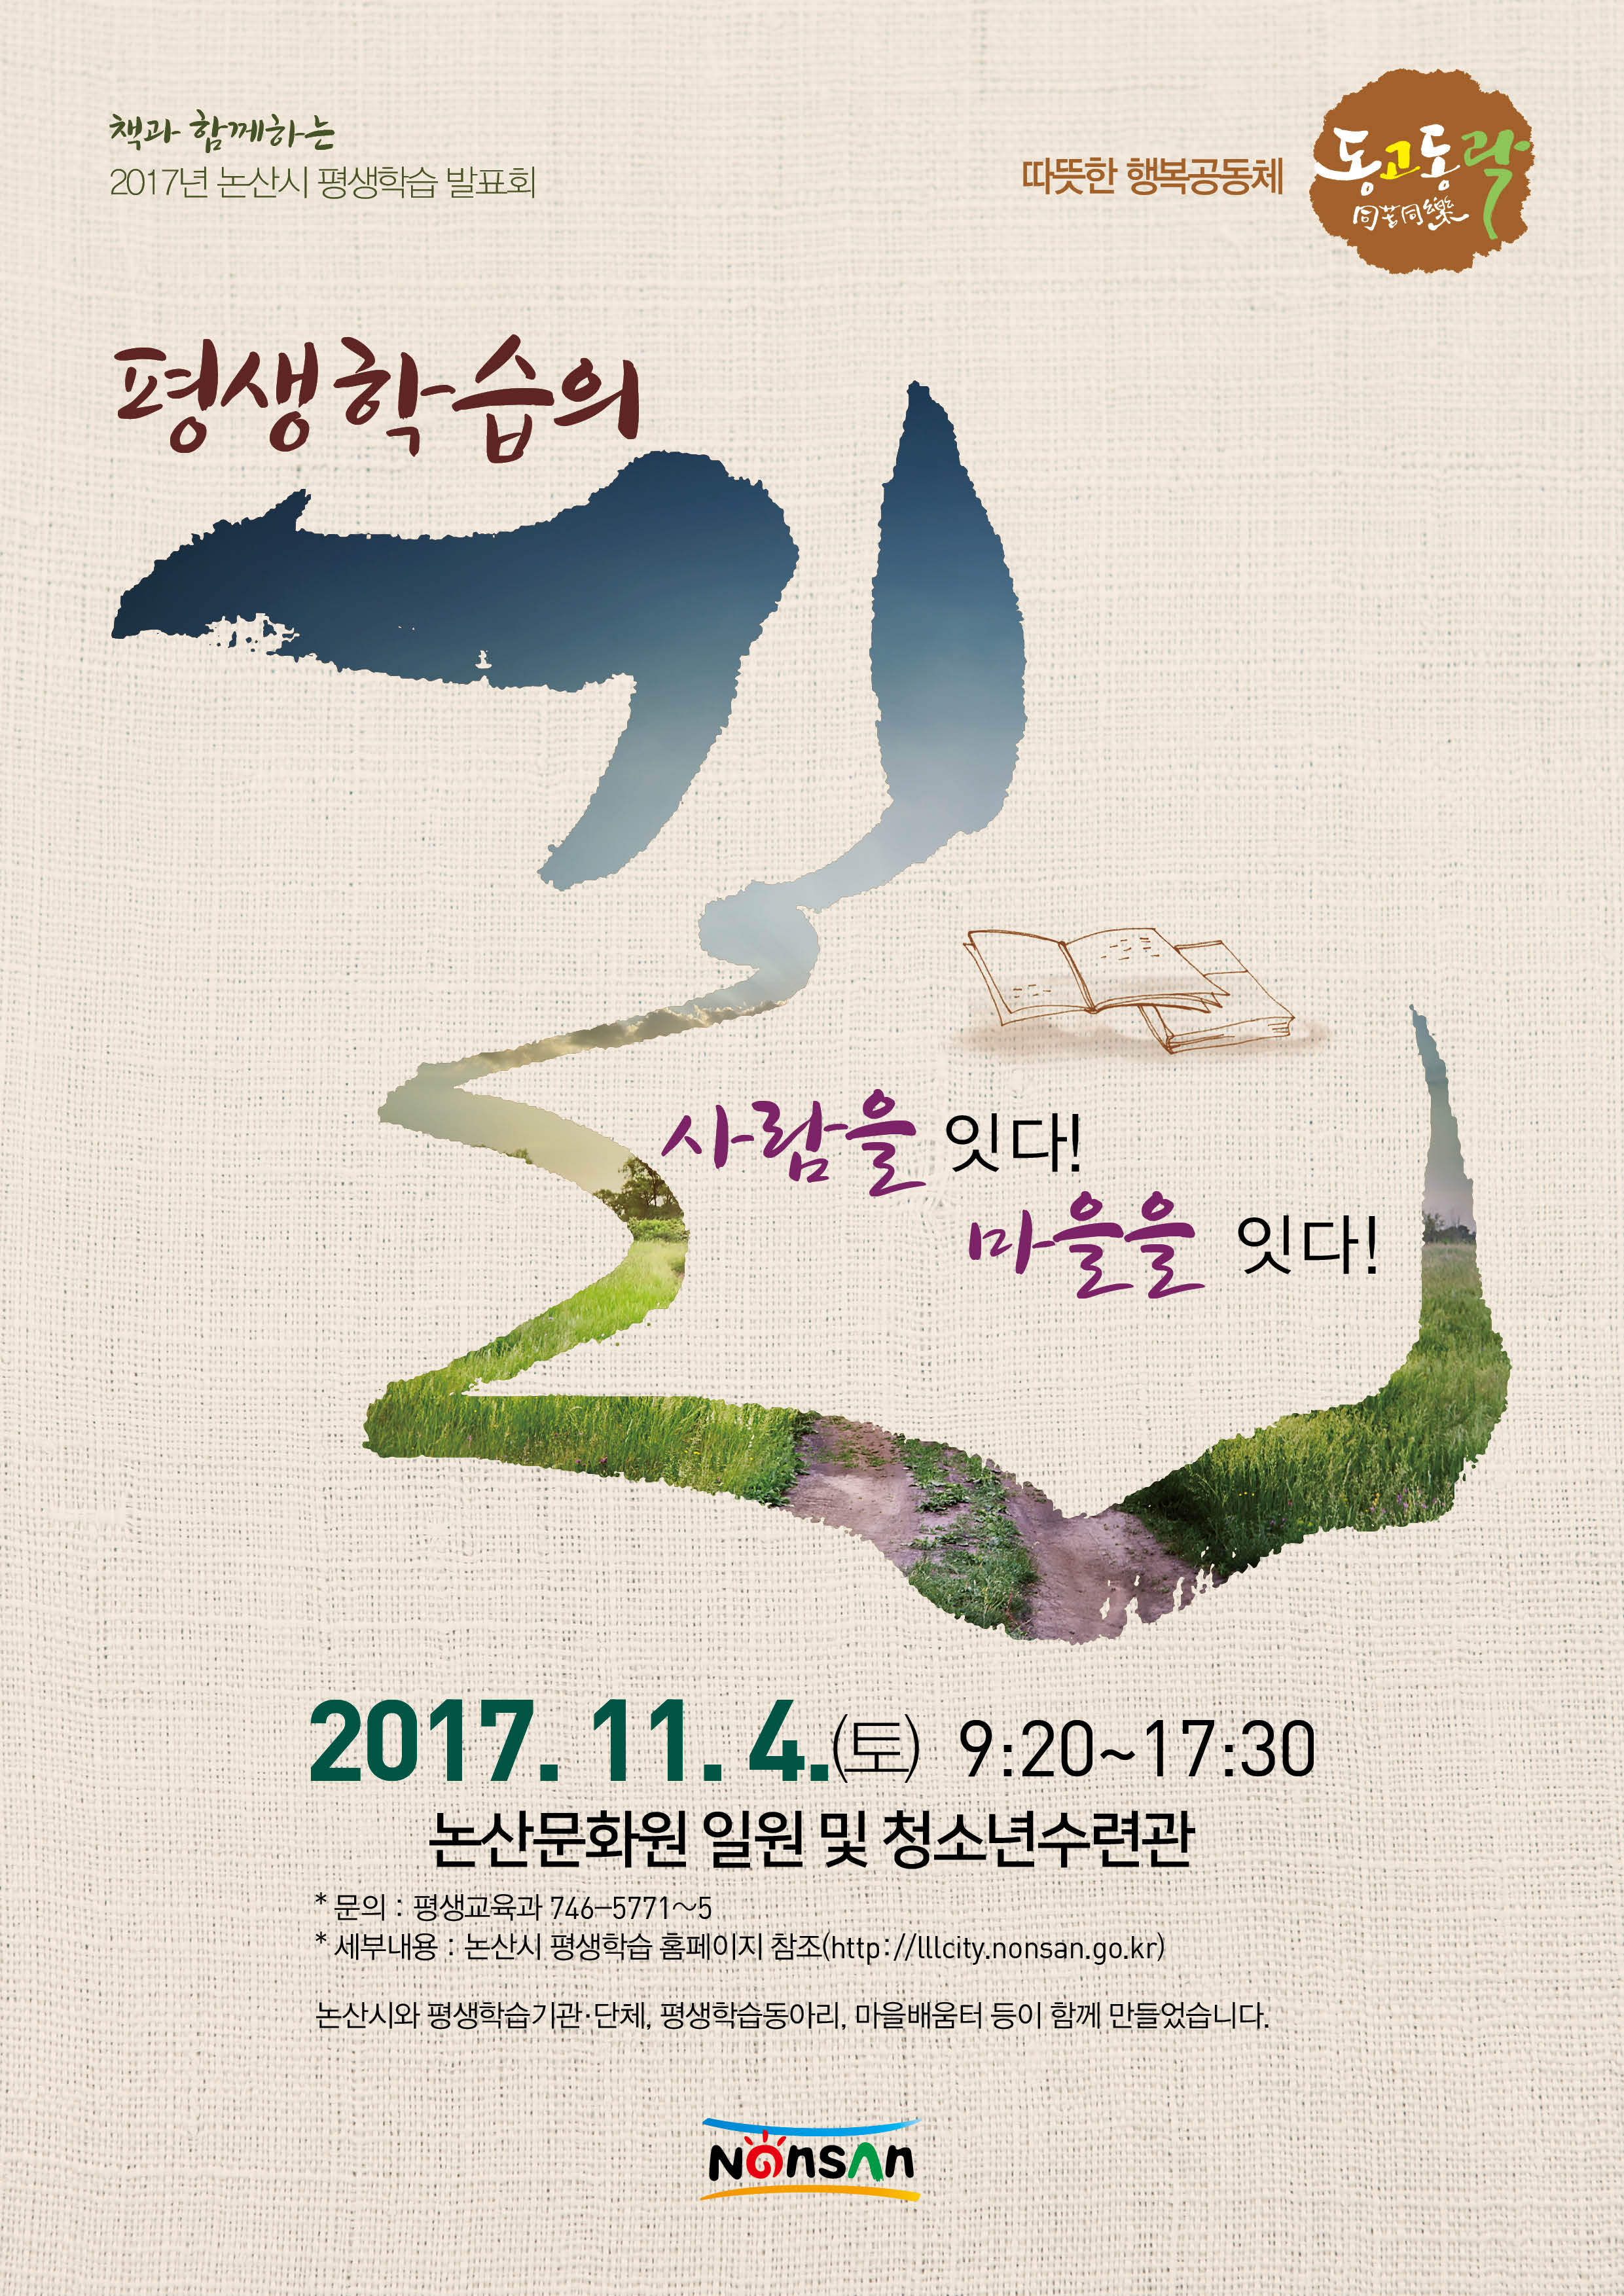 2017년 논산시 평생학습 발표회[2017. 11. 4.토]